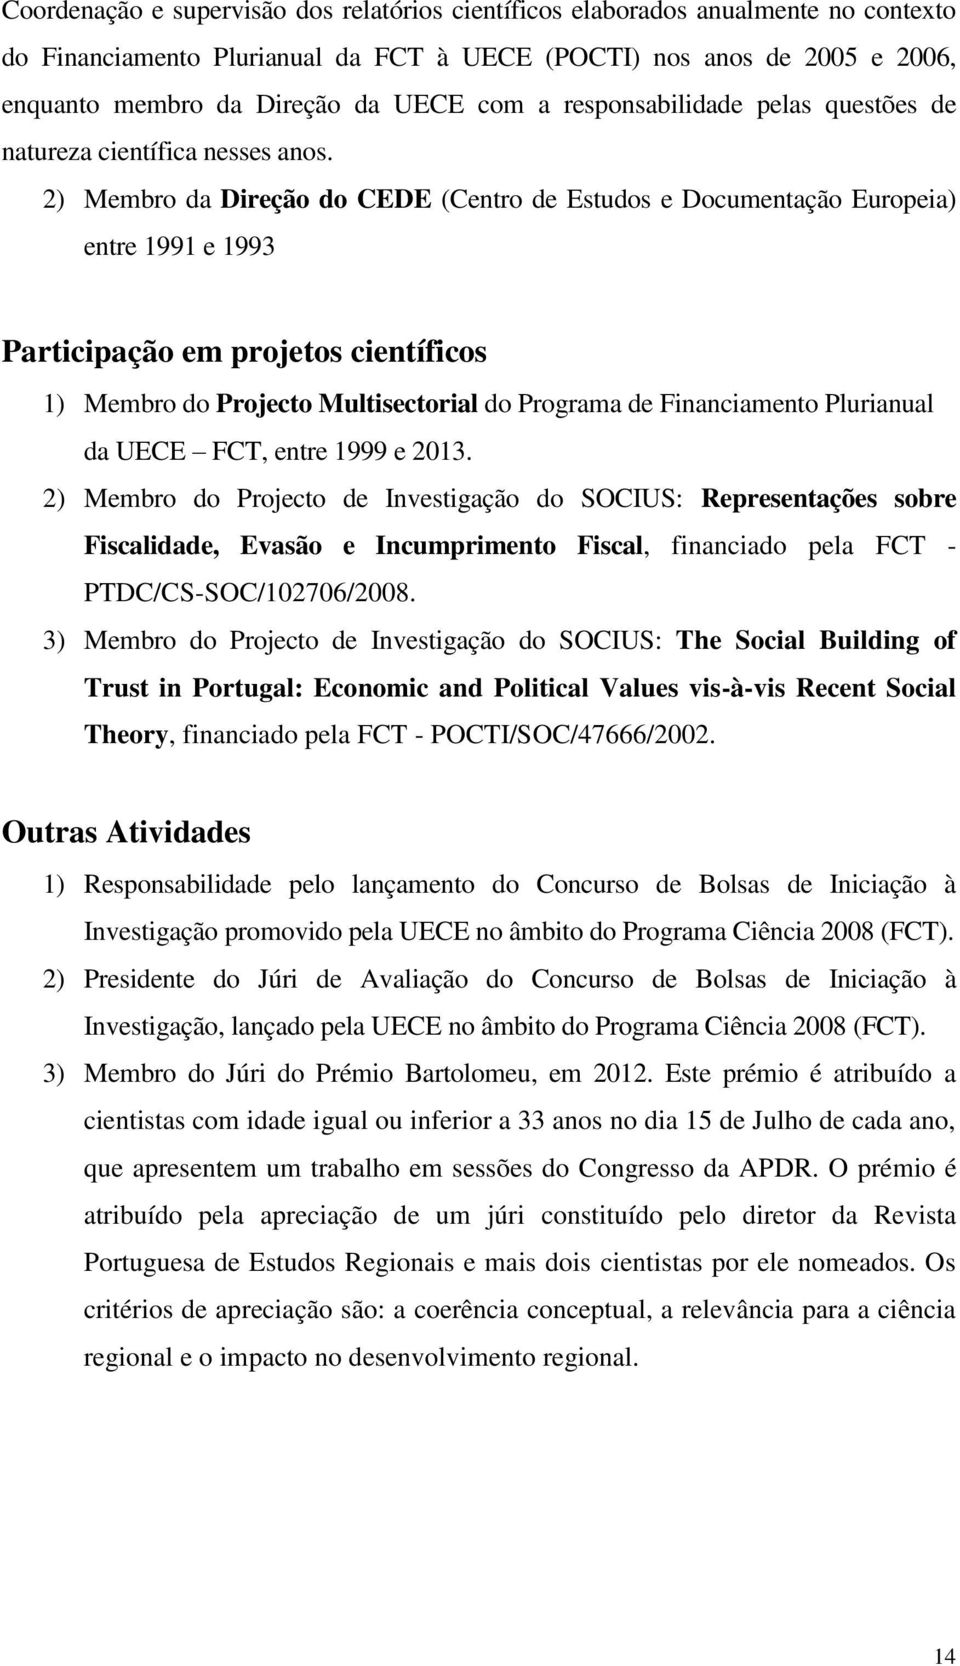 2) Membro da Direção do CEDE (Centro de Estudos e Documentação Europeia) entre 1991 e 1993 Participação em projetos científicos 1) Membro do Projecto Multisectorial do Programa de Financiamento